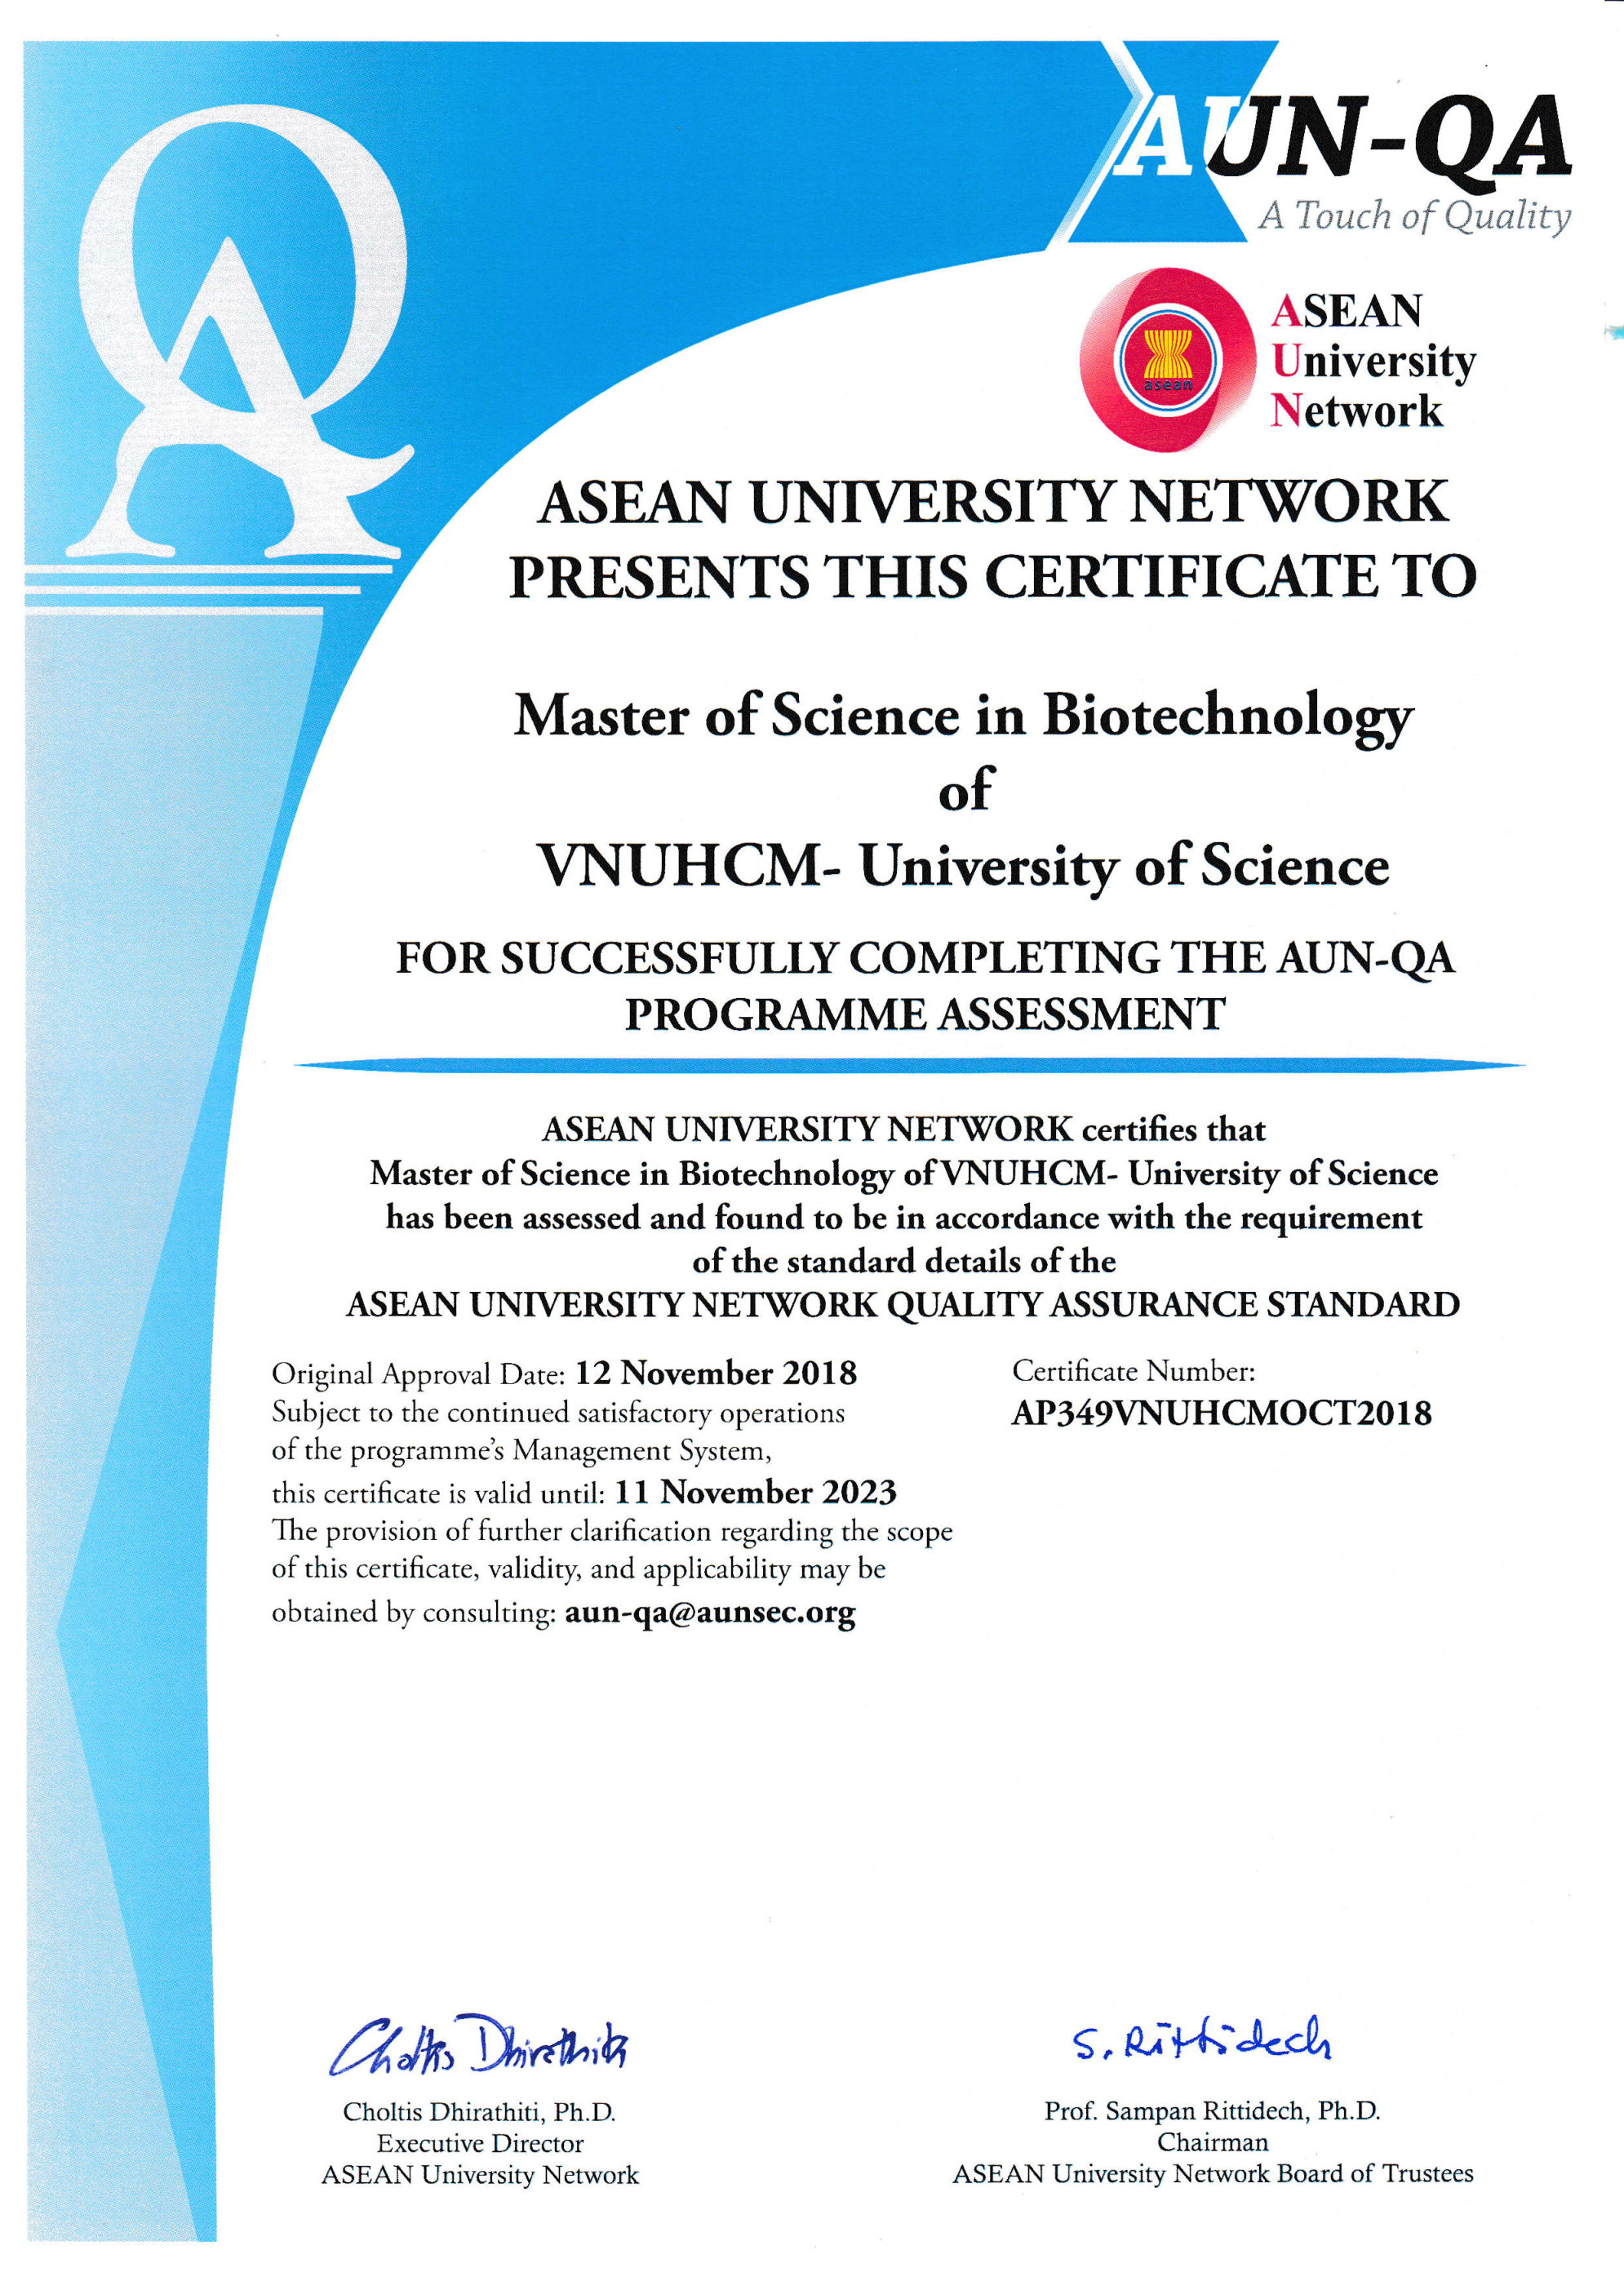 VNUHCM-_University_of_Science_Biotechnology